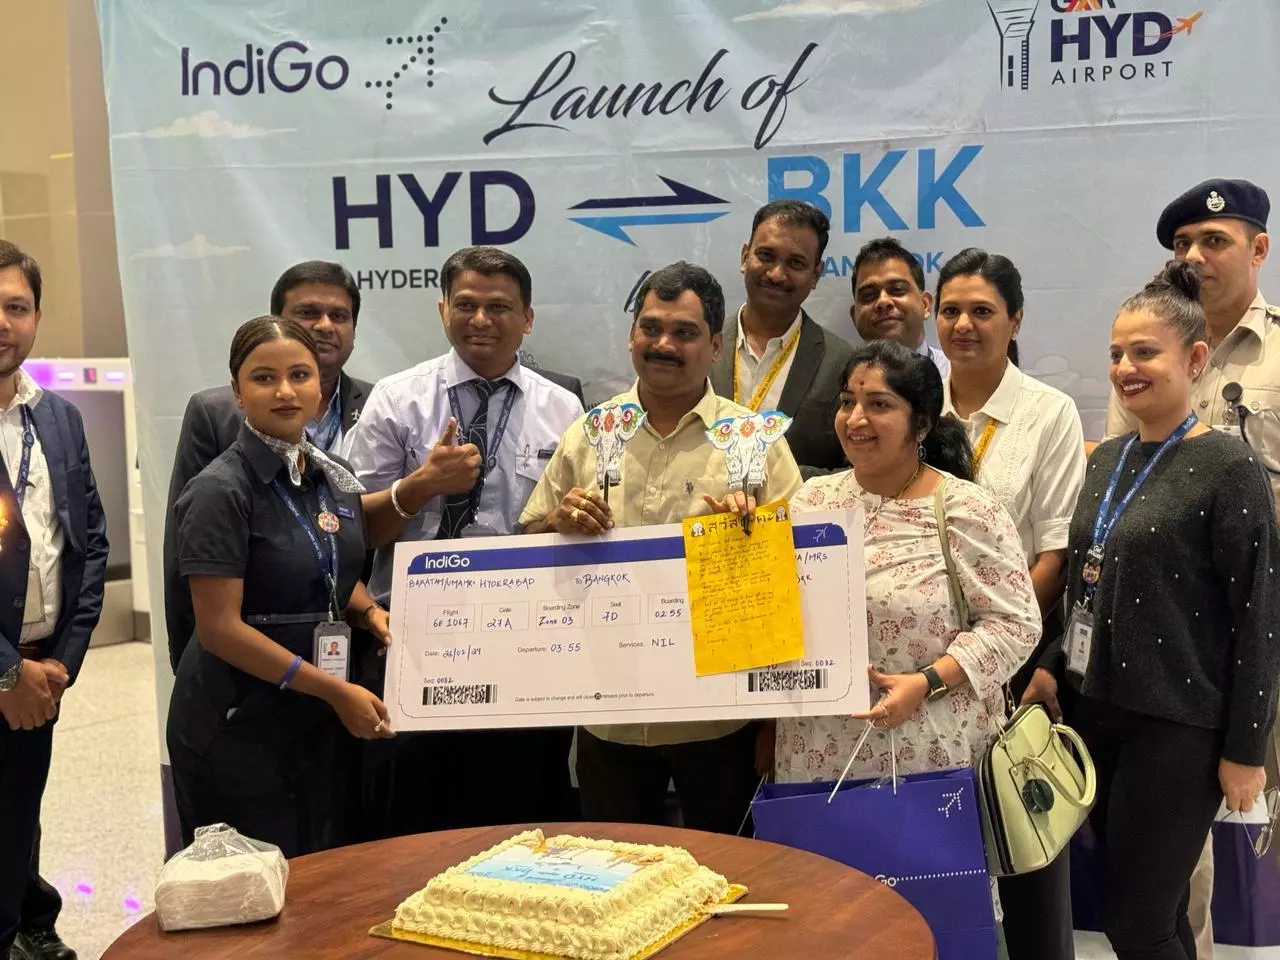 IndiGo Launches Direct Flights Between Hyderabad and Bangkok